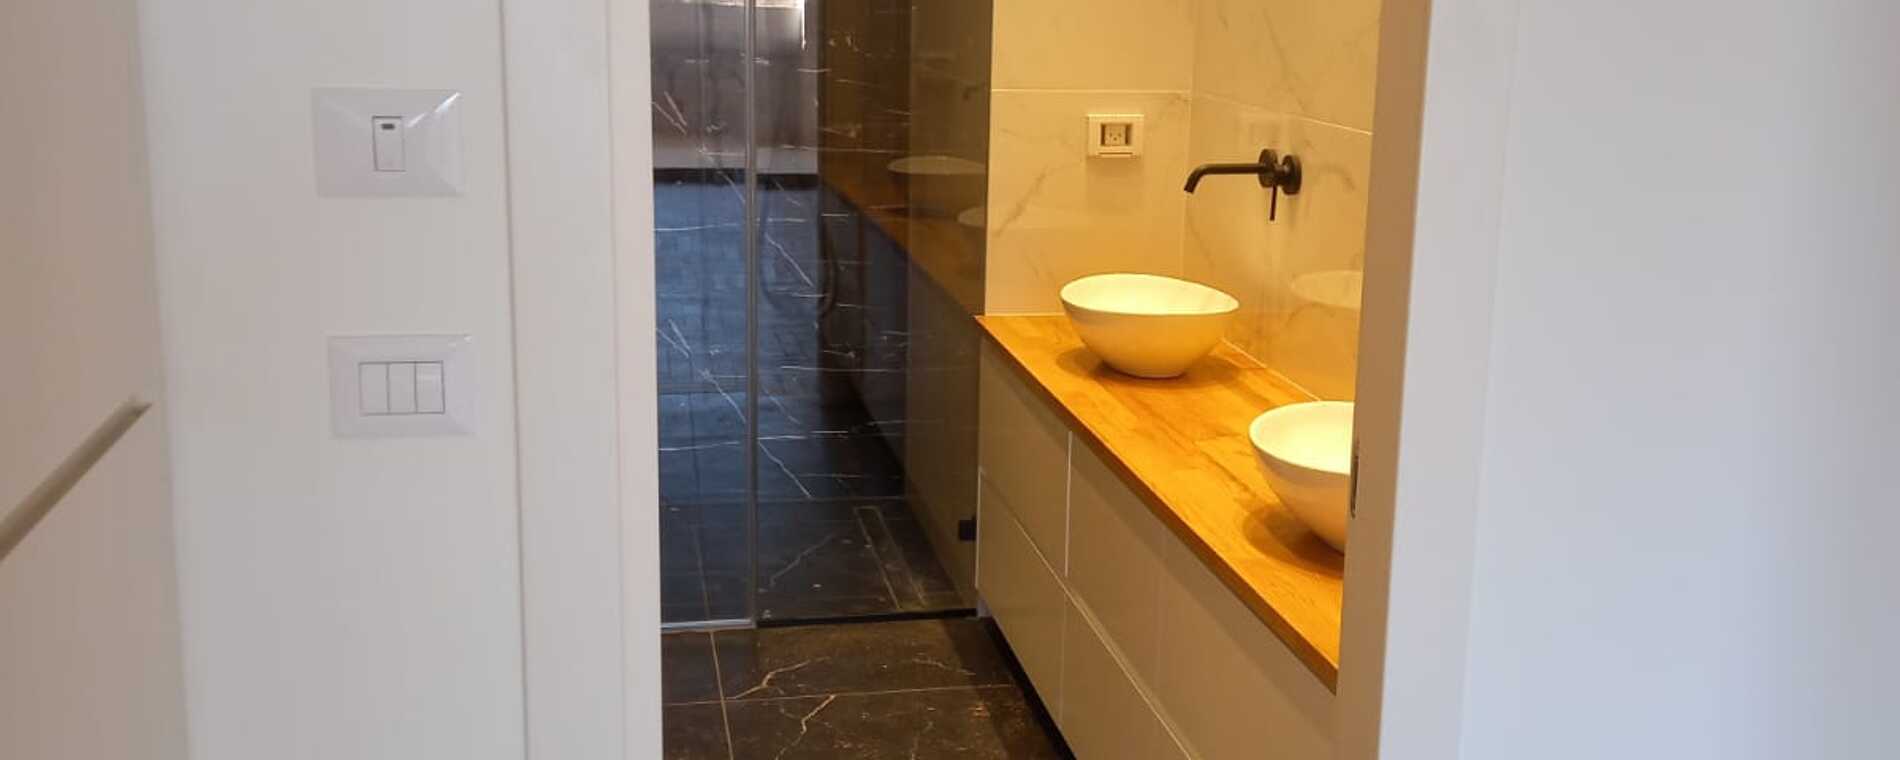 assets/images/properties/KDC Garden Bathroom Sinks.jpg